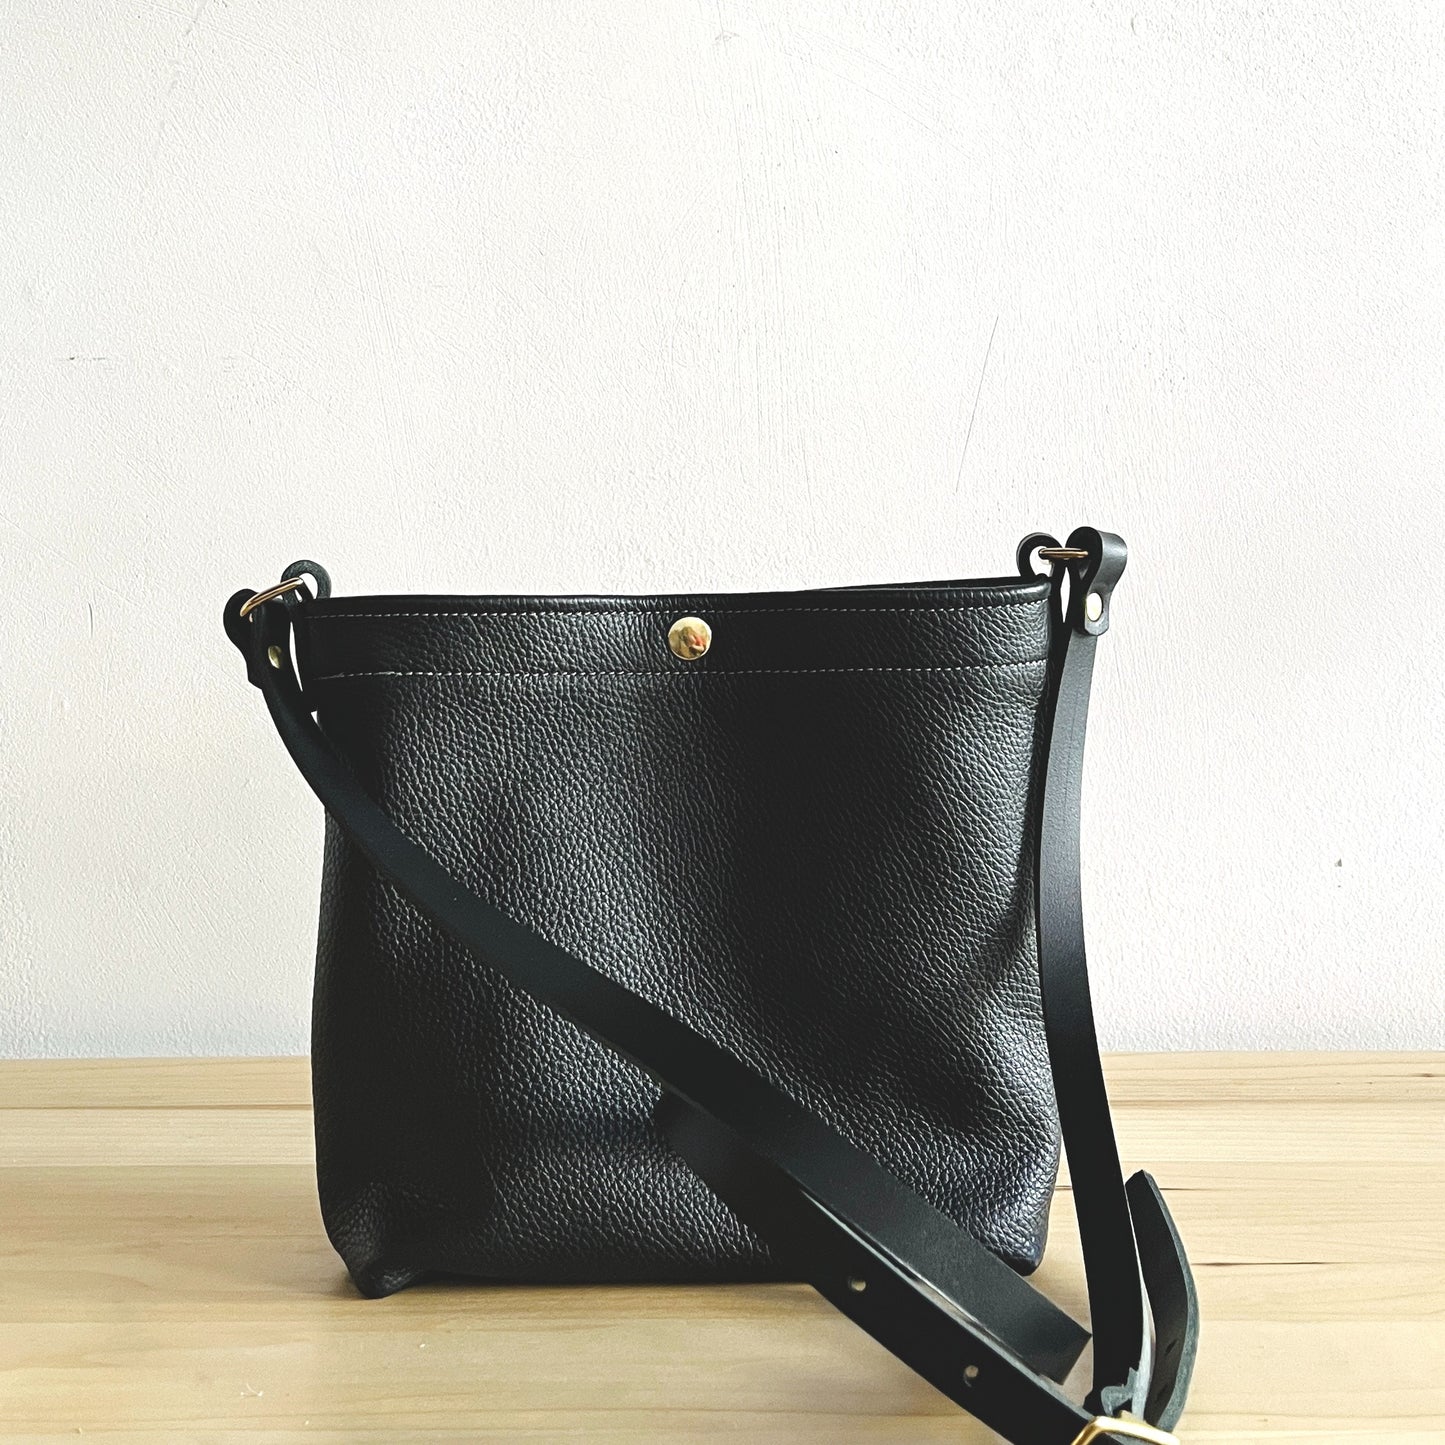 Leather Snap Bag - Black